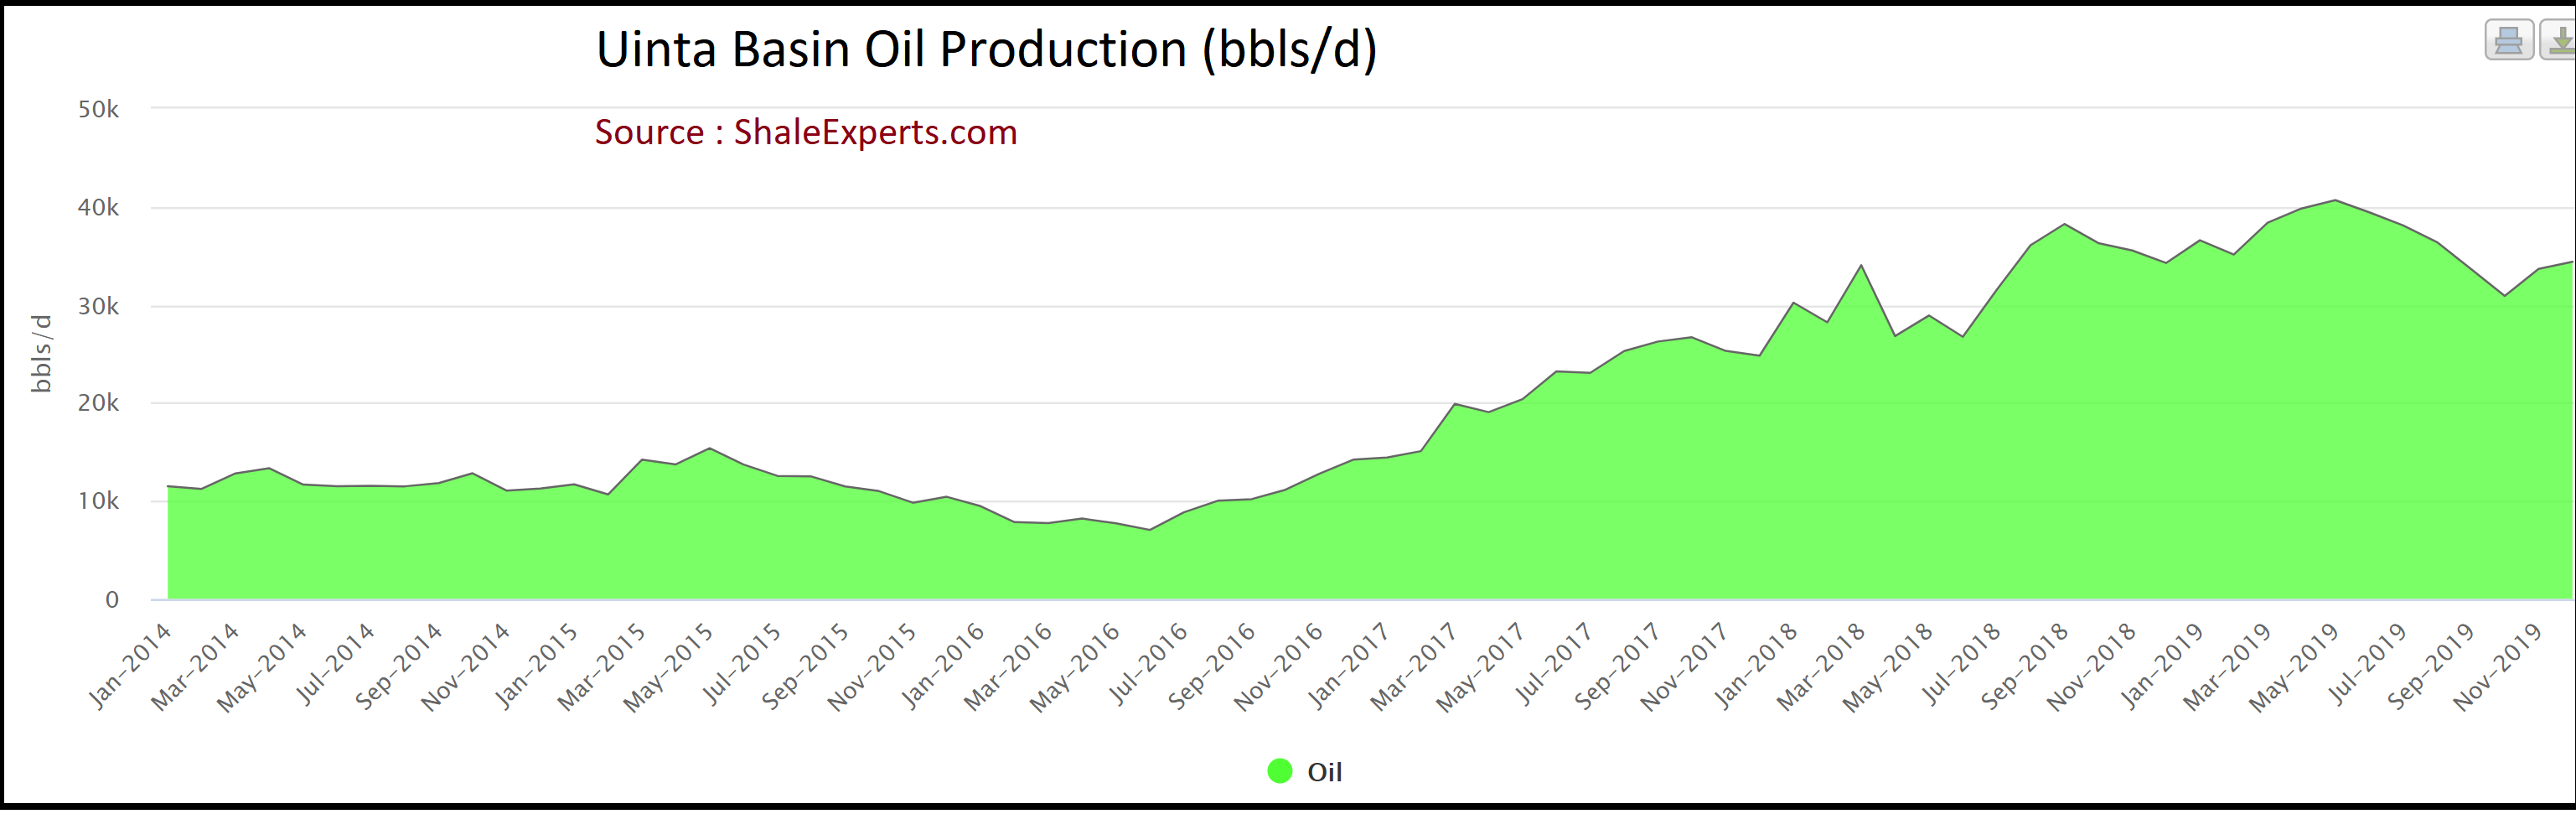 Uinta Basin Oil Production